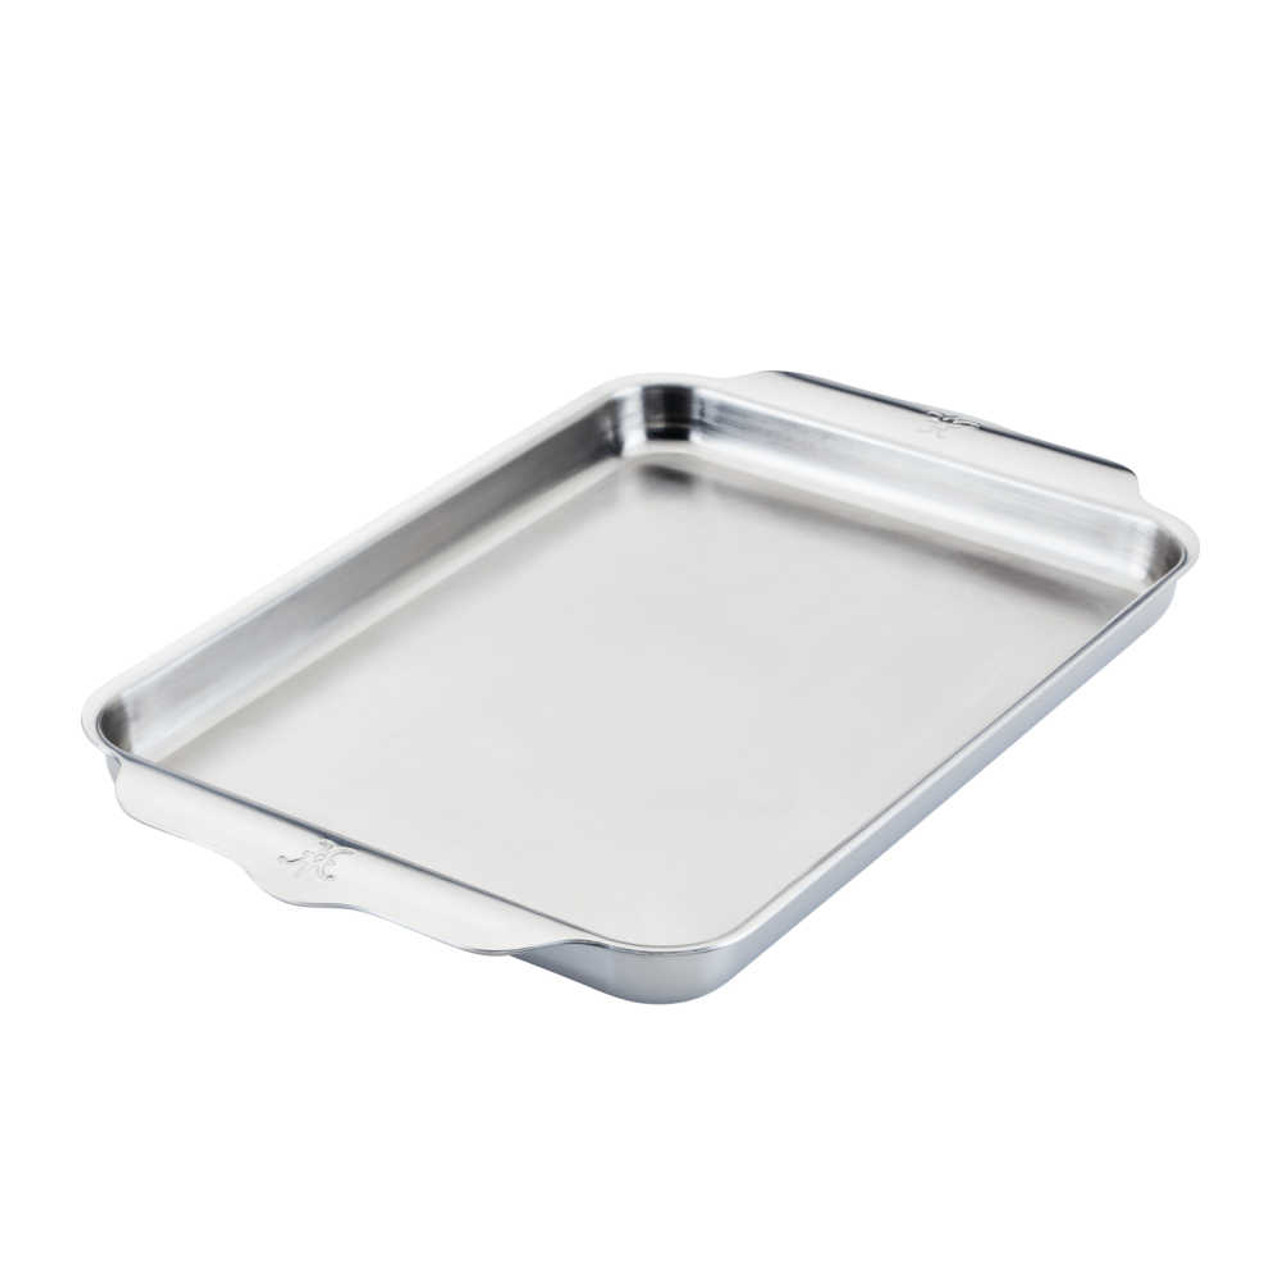 OvenBond Stainless Steel Quarter Sheet Pan Rack – Hestan Culinary